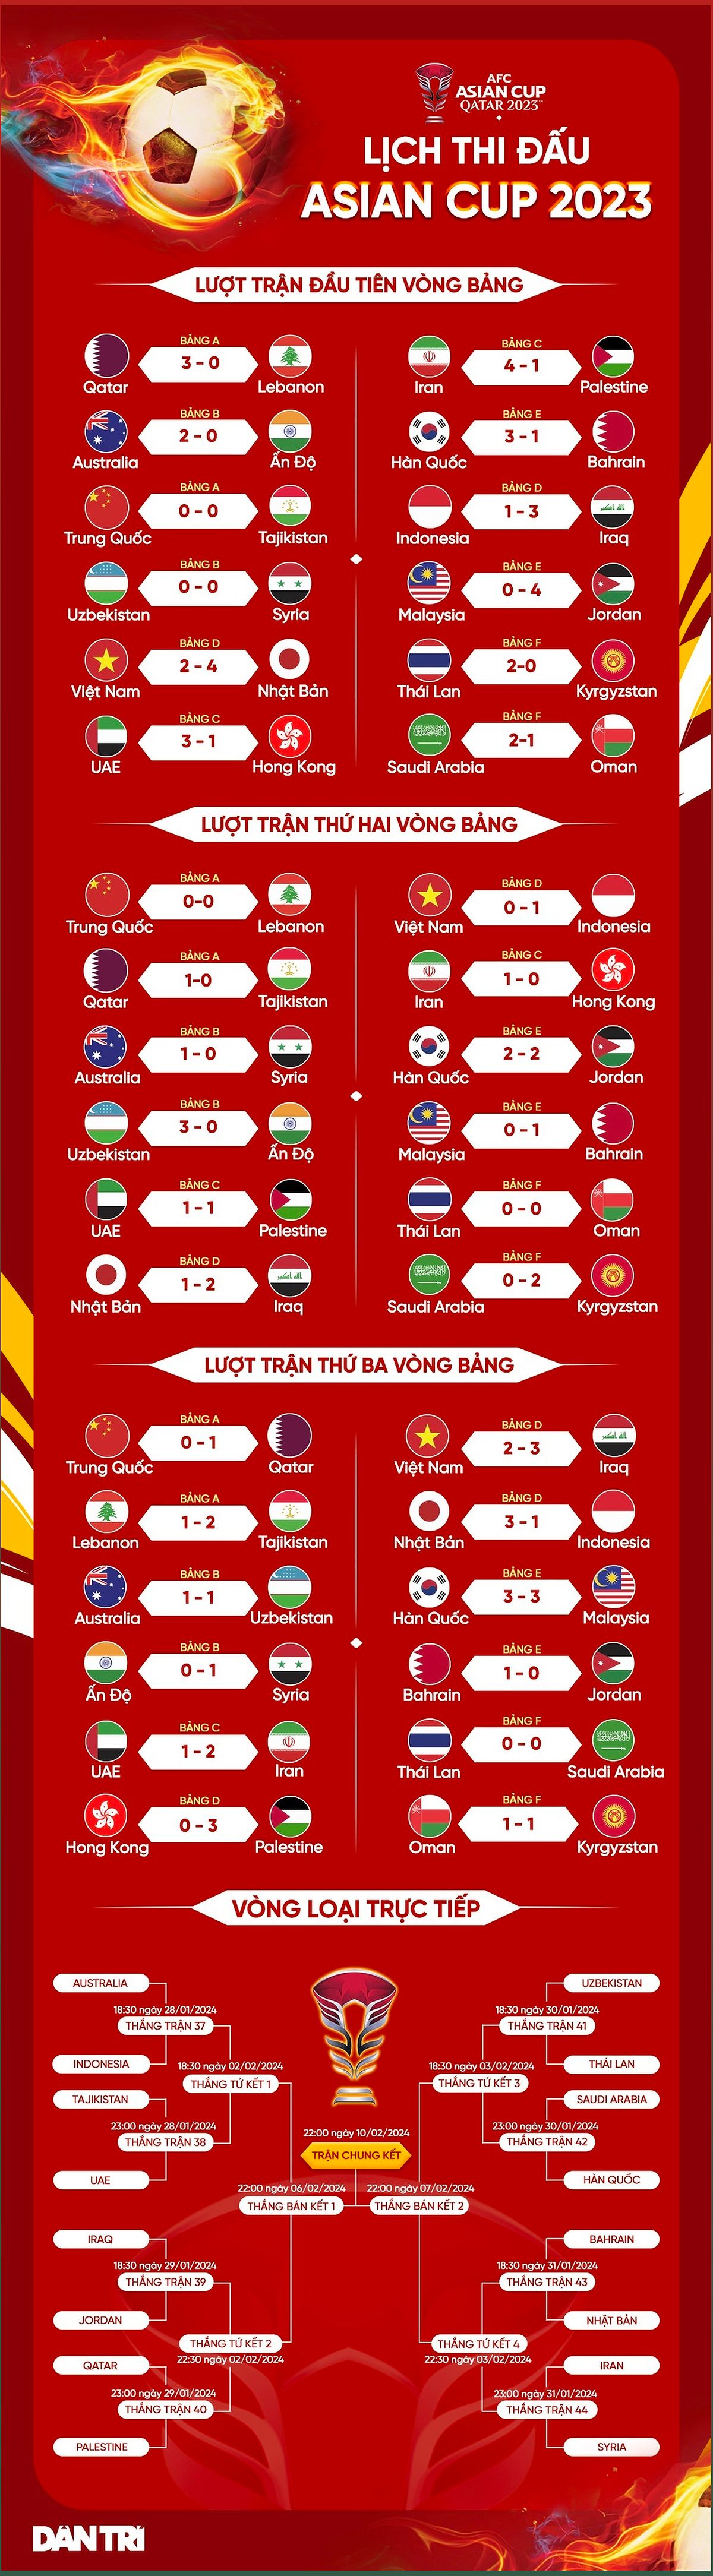 Đội tuyển Việt Nam tại Asian Cup 2023: Thất bại thảm hại và sự thay đổi đầy rủi ro - -422440258